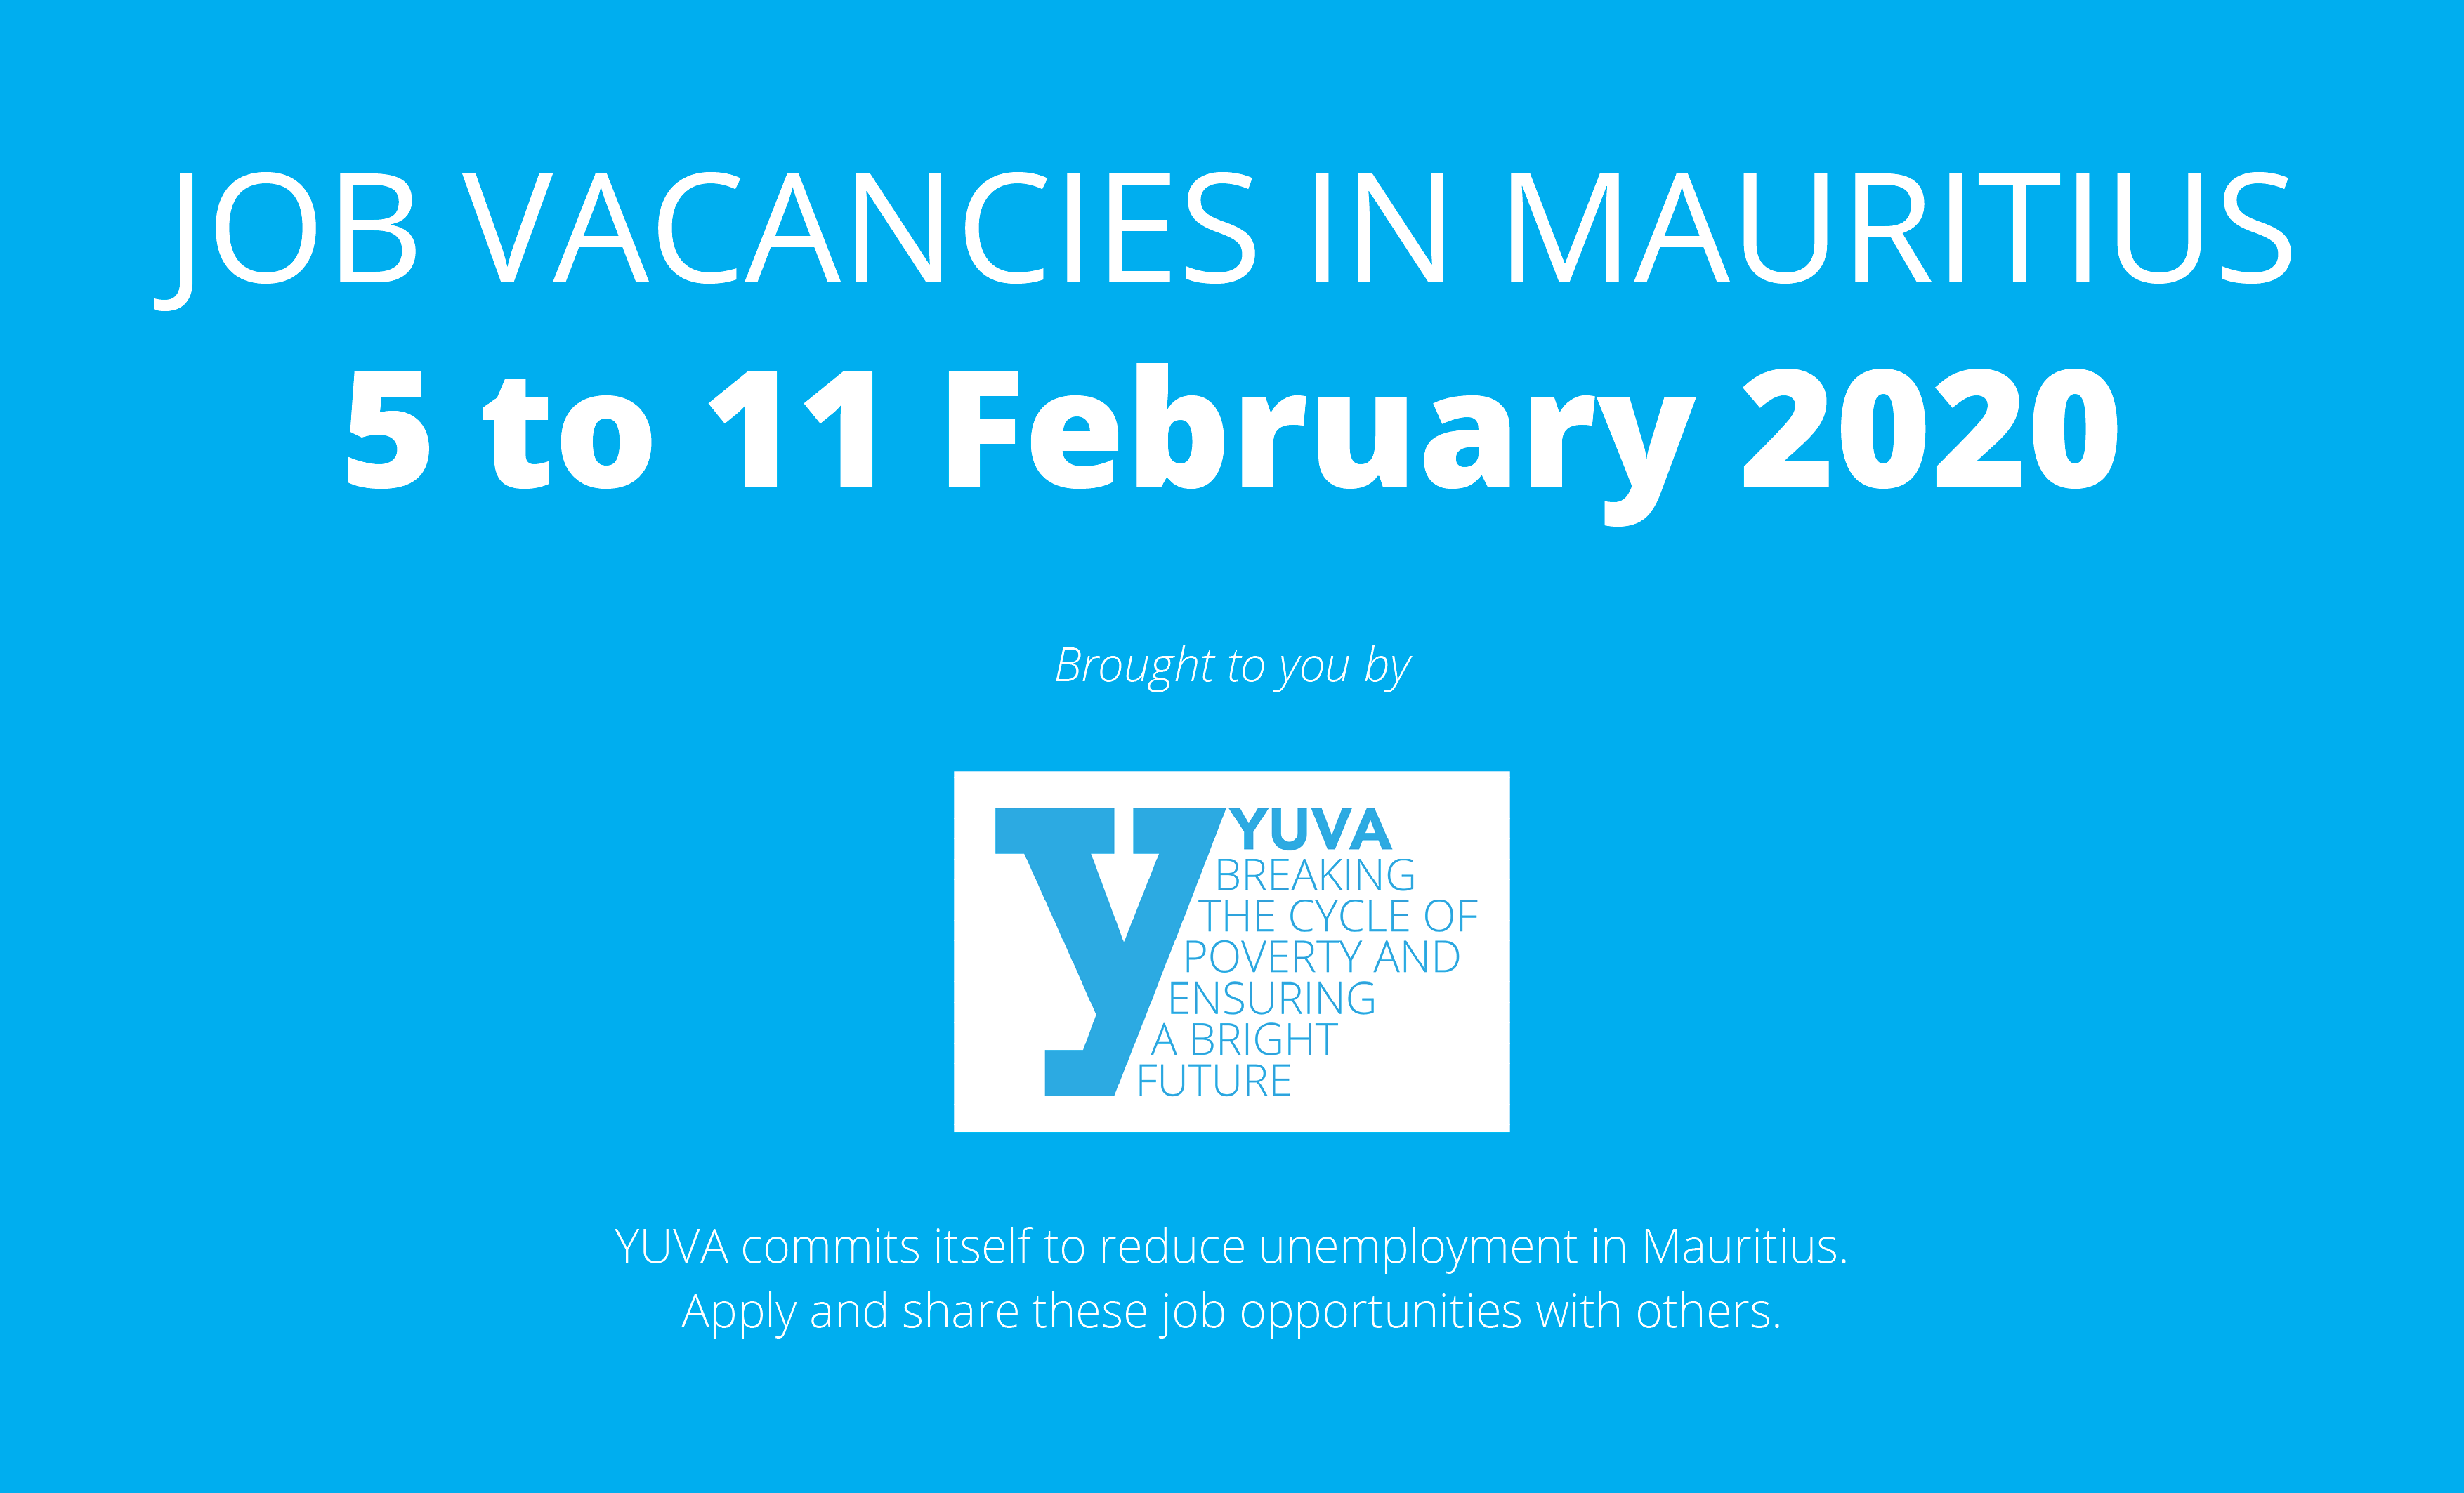 Job vacancies in Mauritius